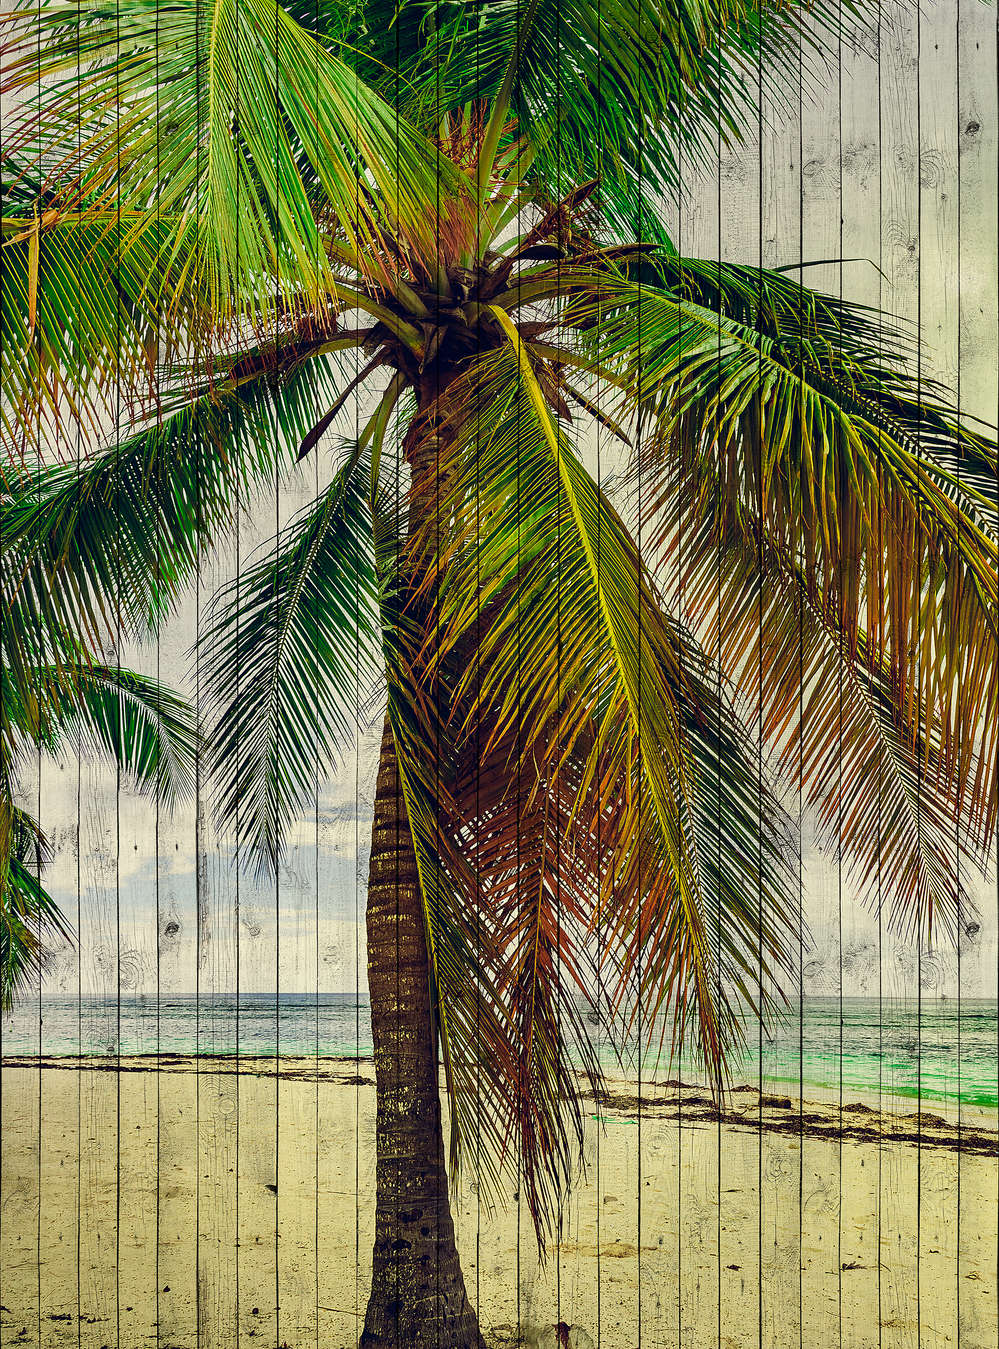             Tahiti 3 - Papel pintado de palmeras con sensación de vacaciones - estructura de paneles de madera - beige, azul | estructura no tejida
        